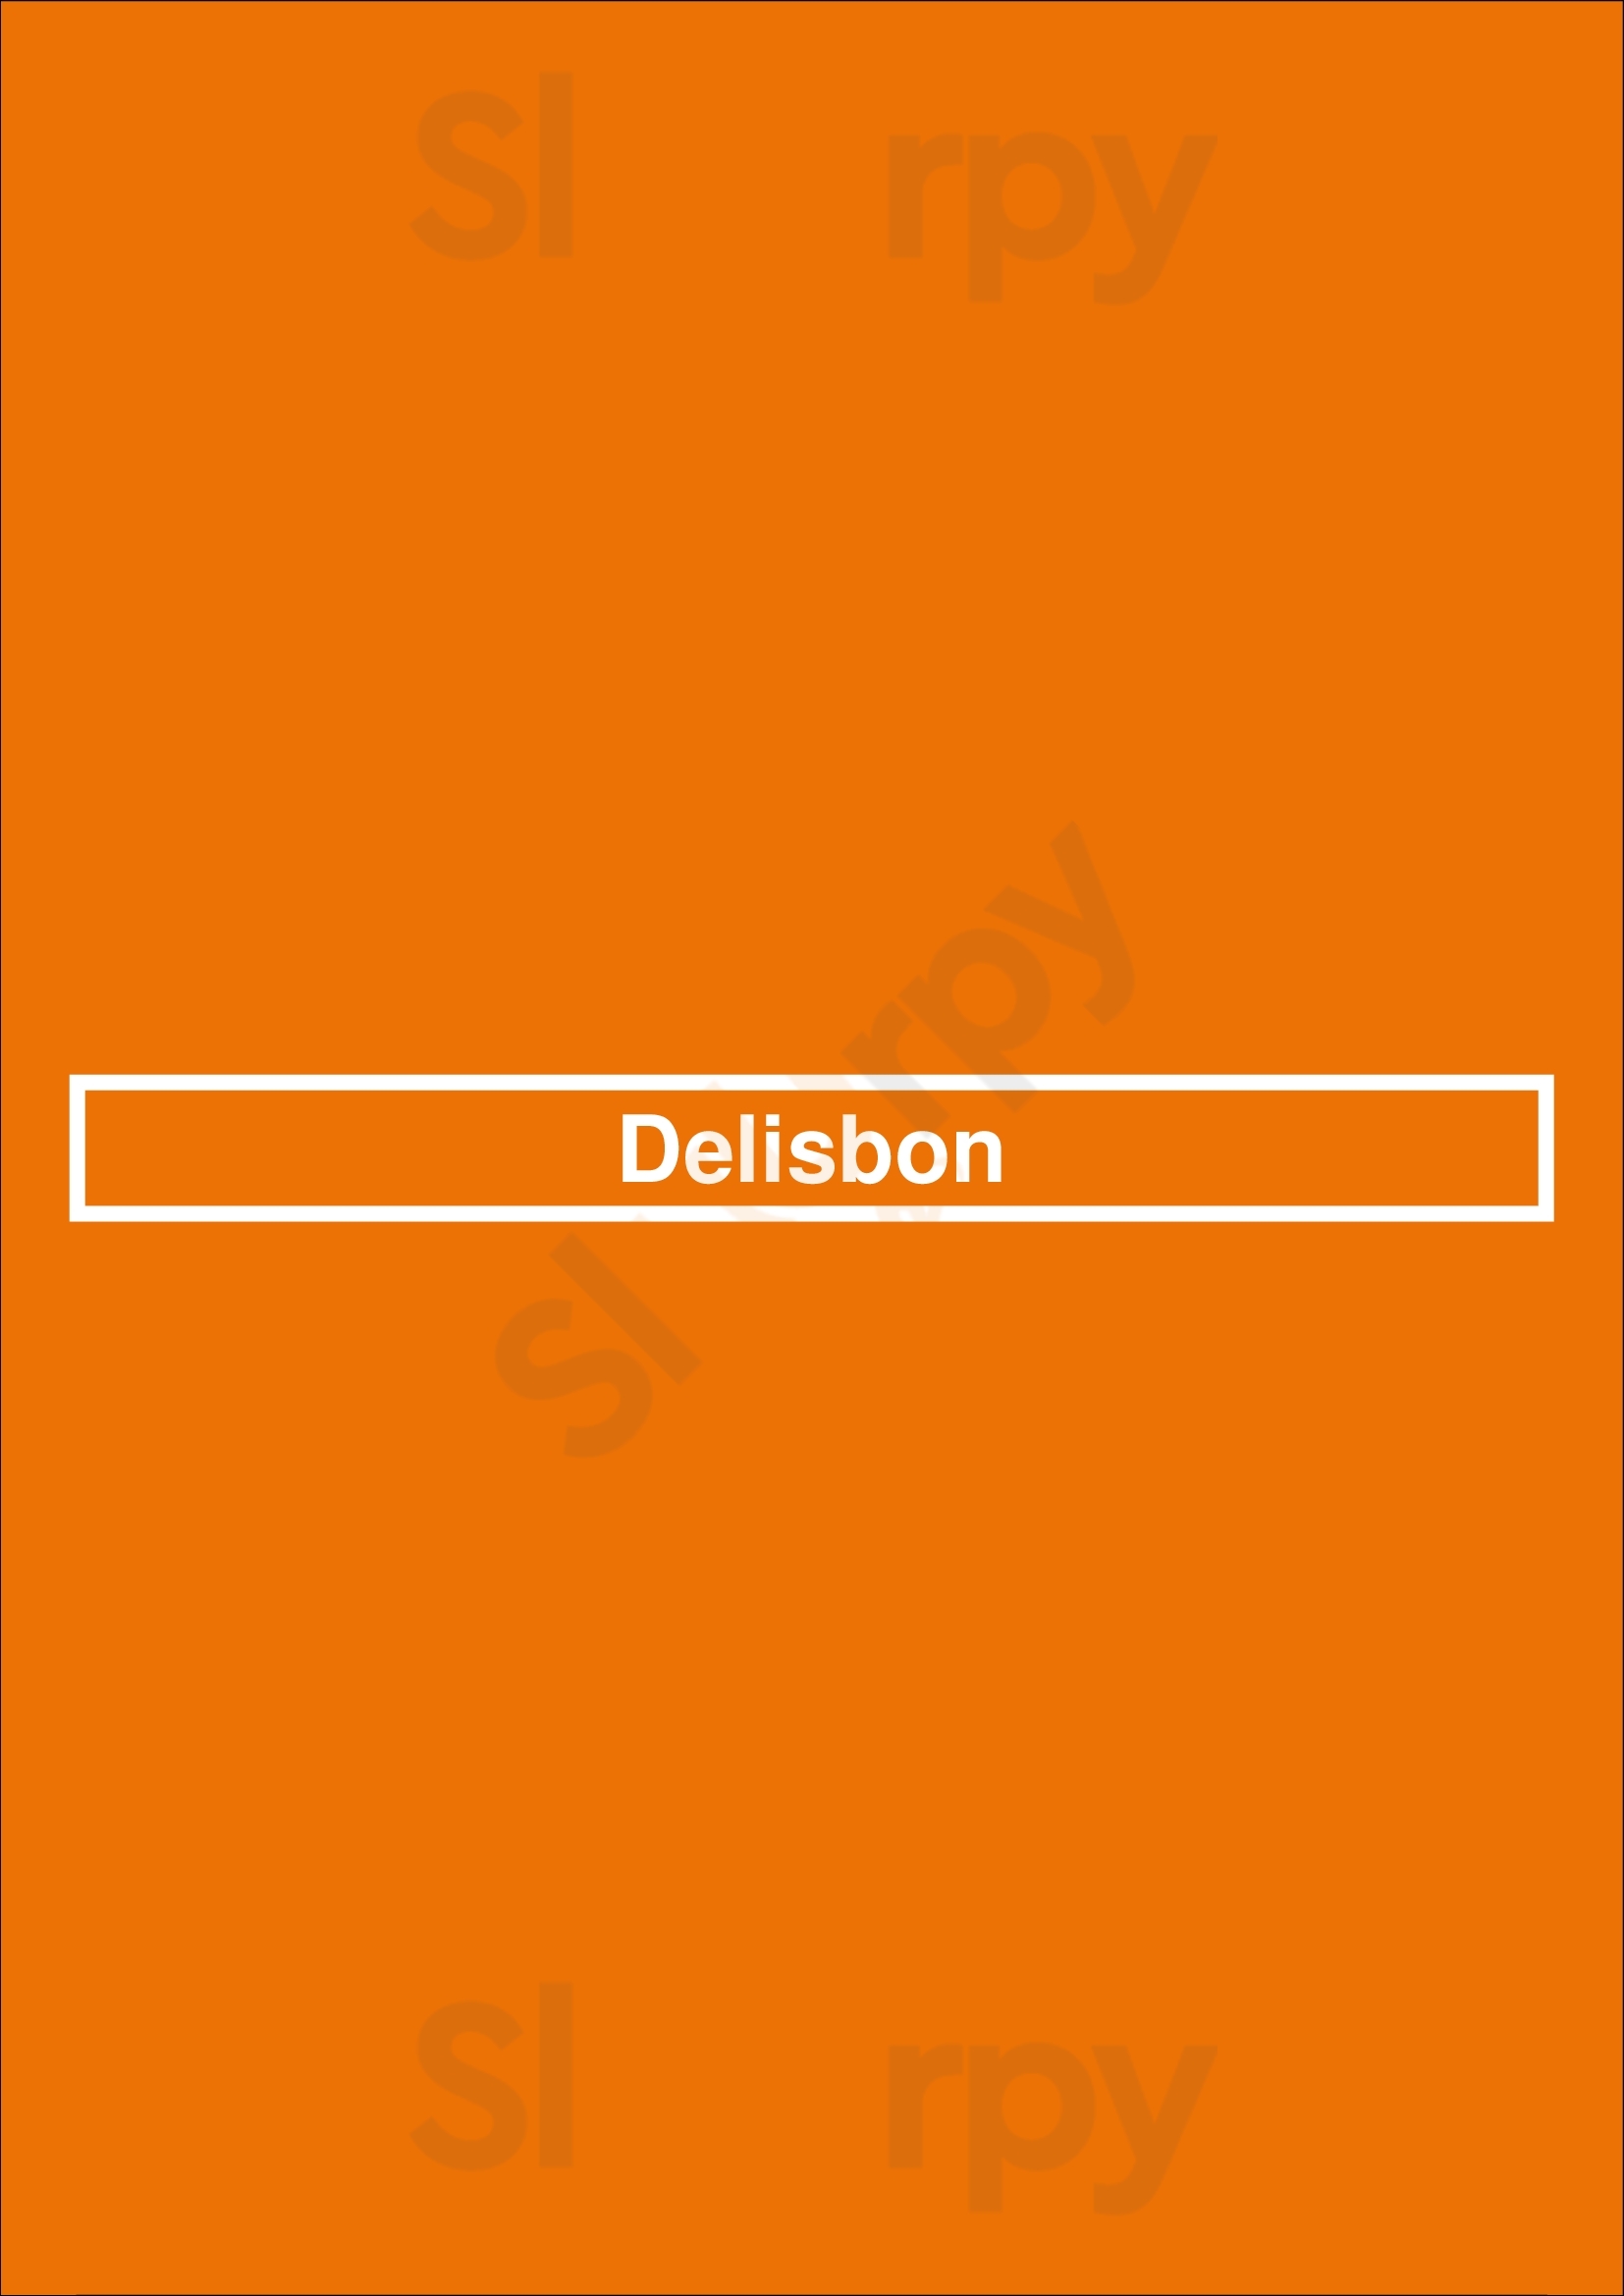 Delisbon Lisboa Menu - 1